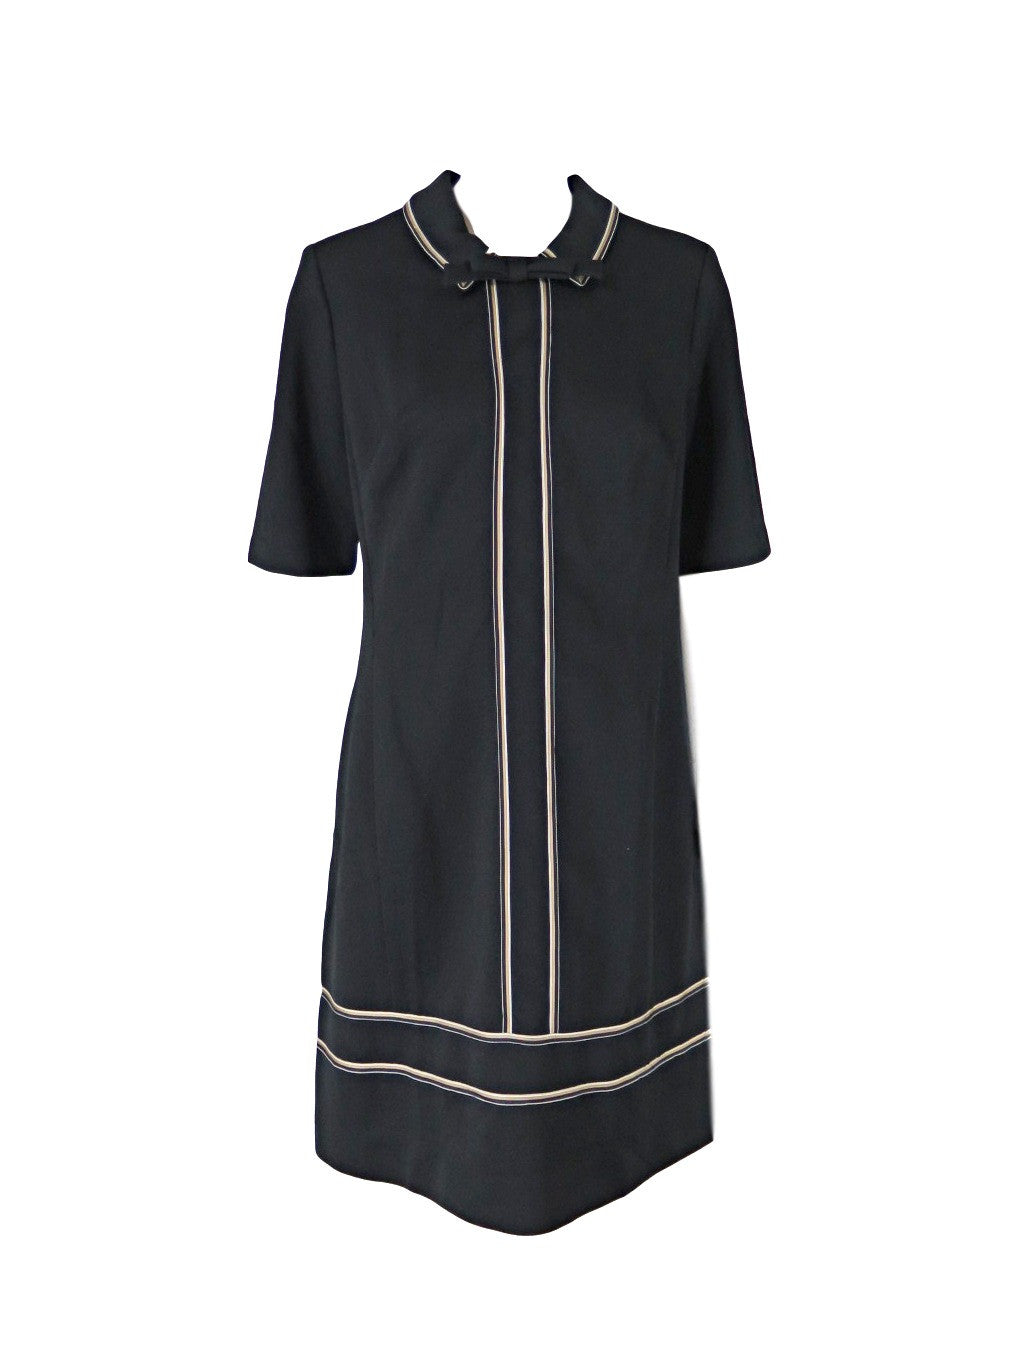 60s Shift Dress in Black Crimplene – Better Dresses Vintage